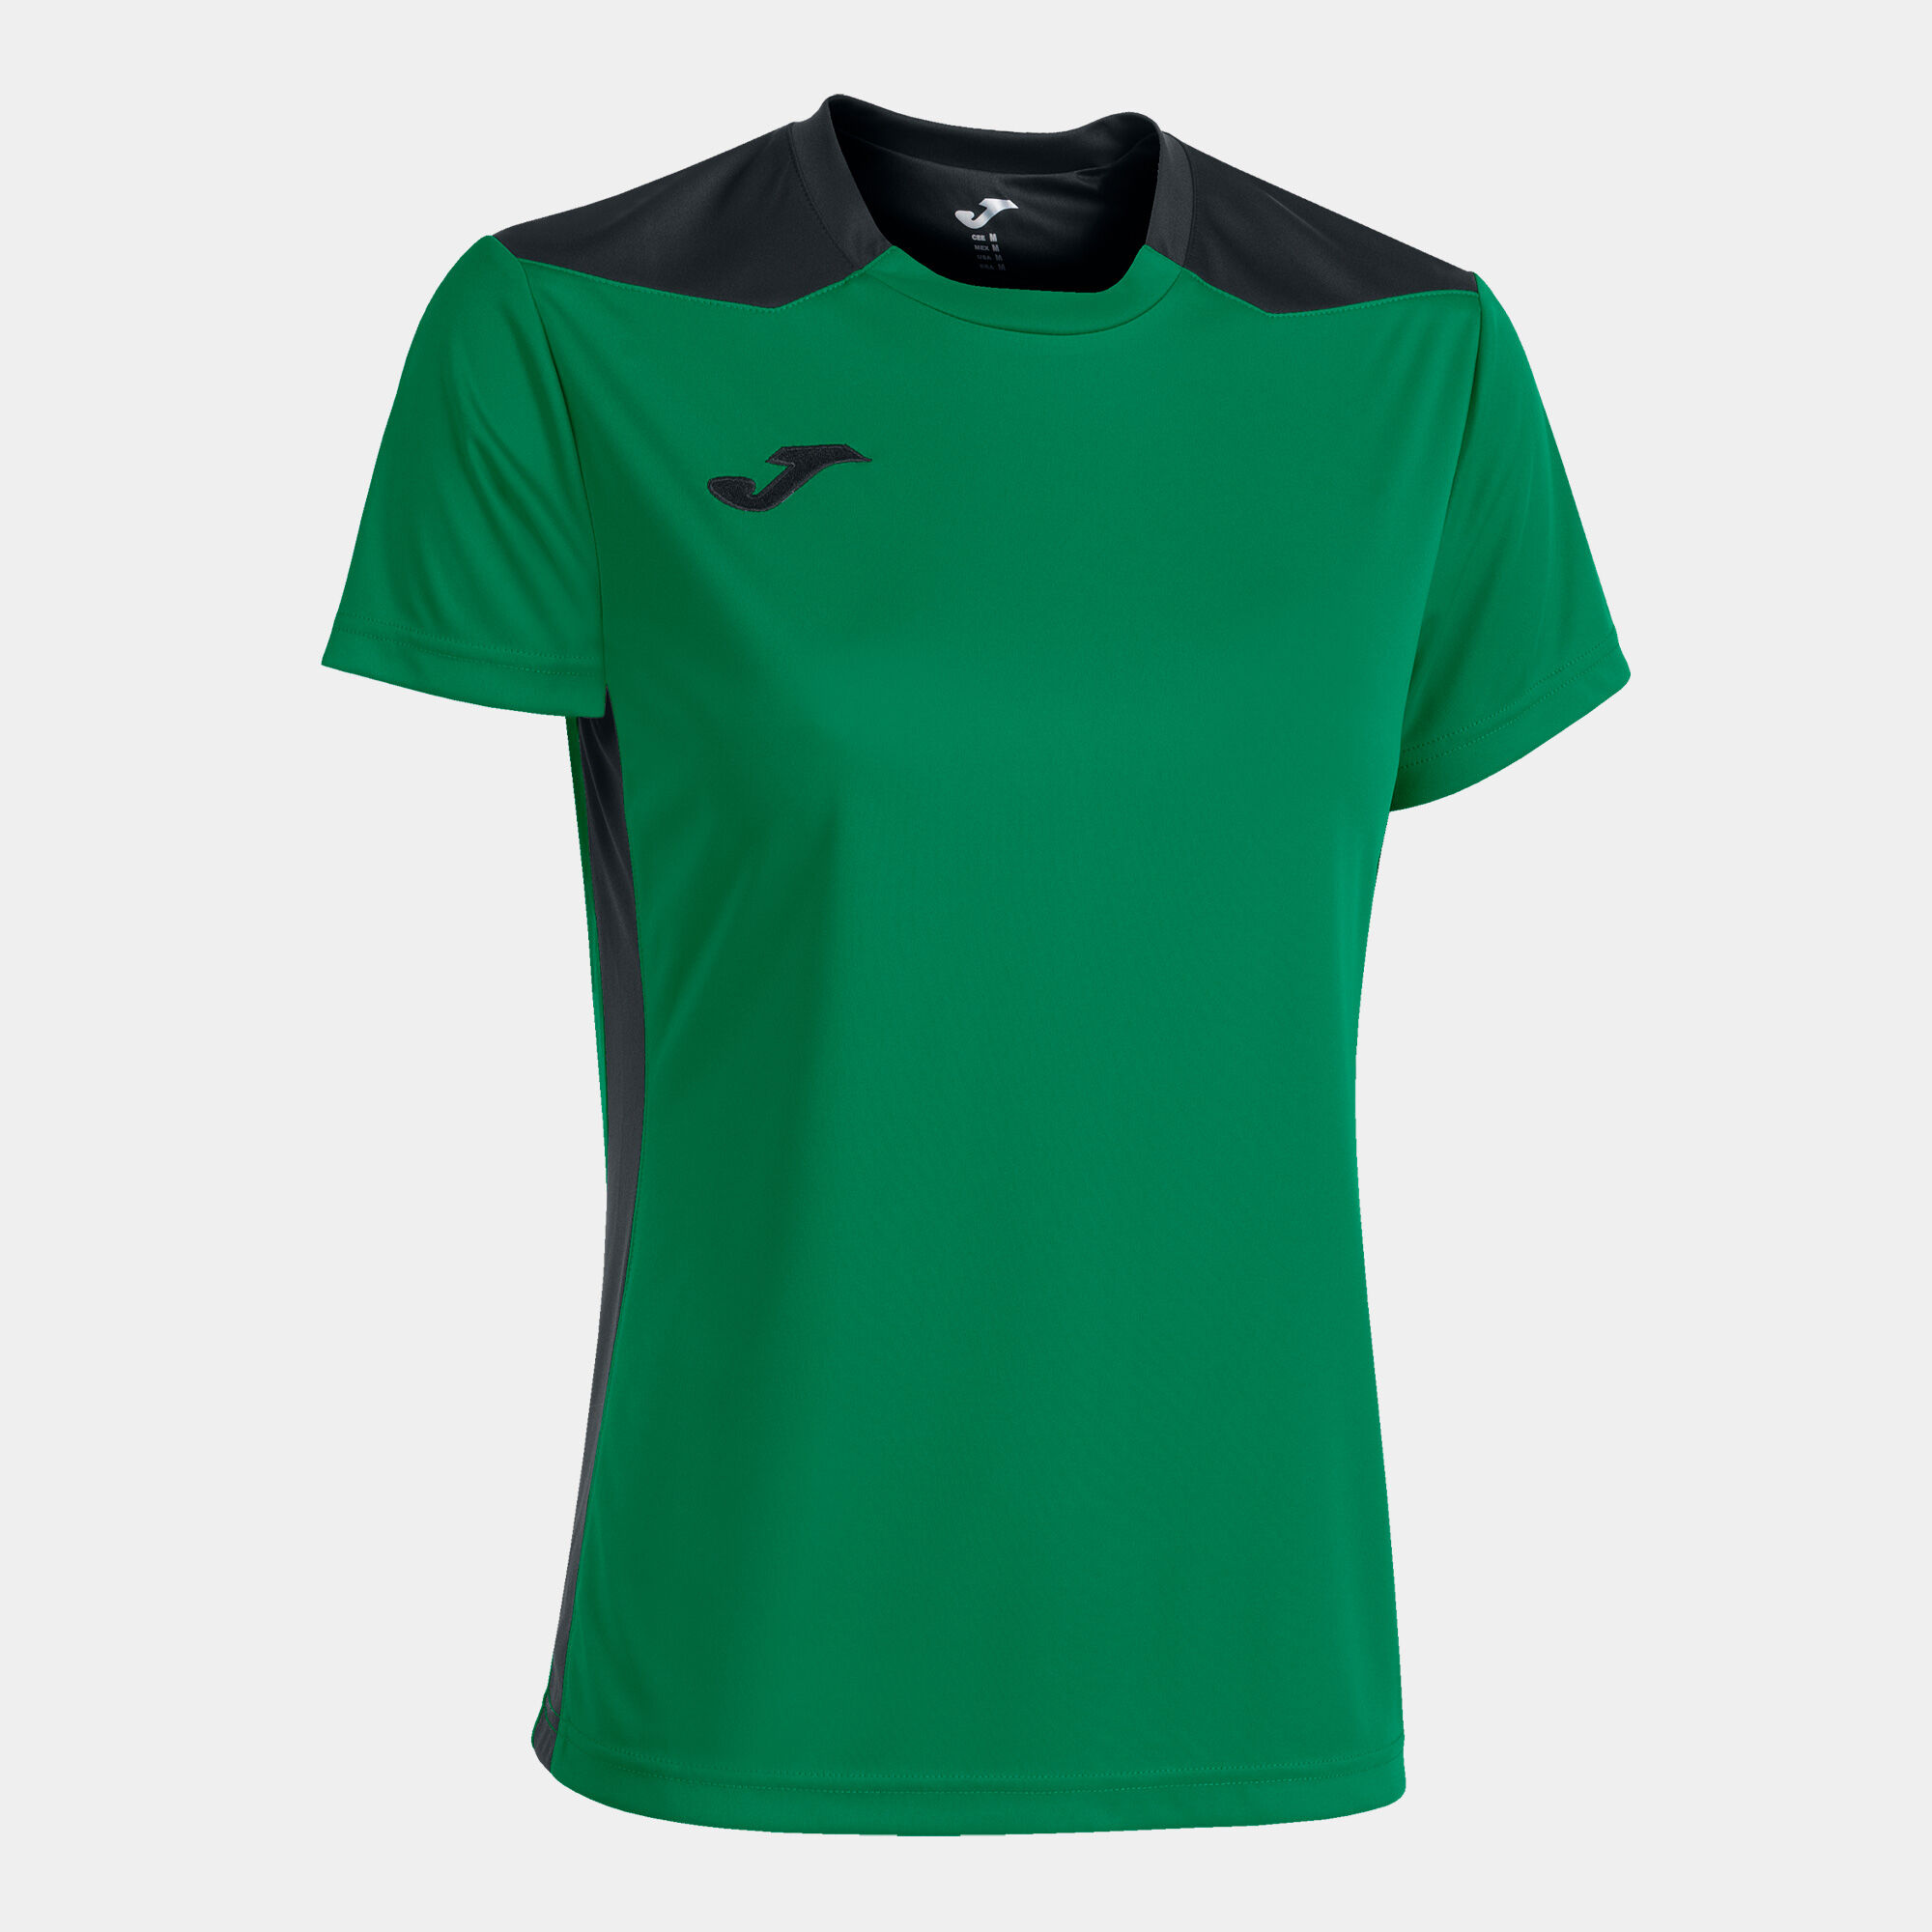 Camiseta manga corta mujer Championship VI verde negro